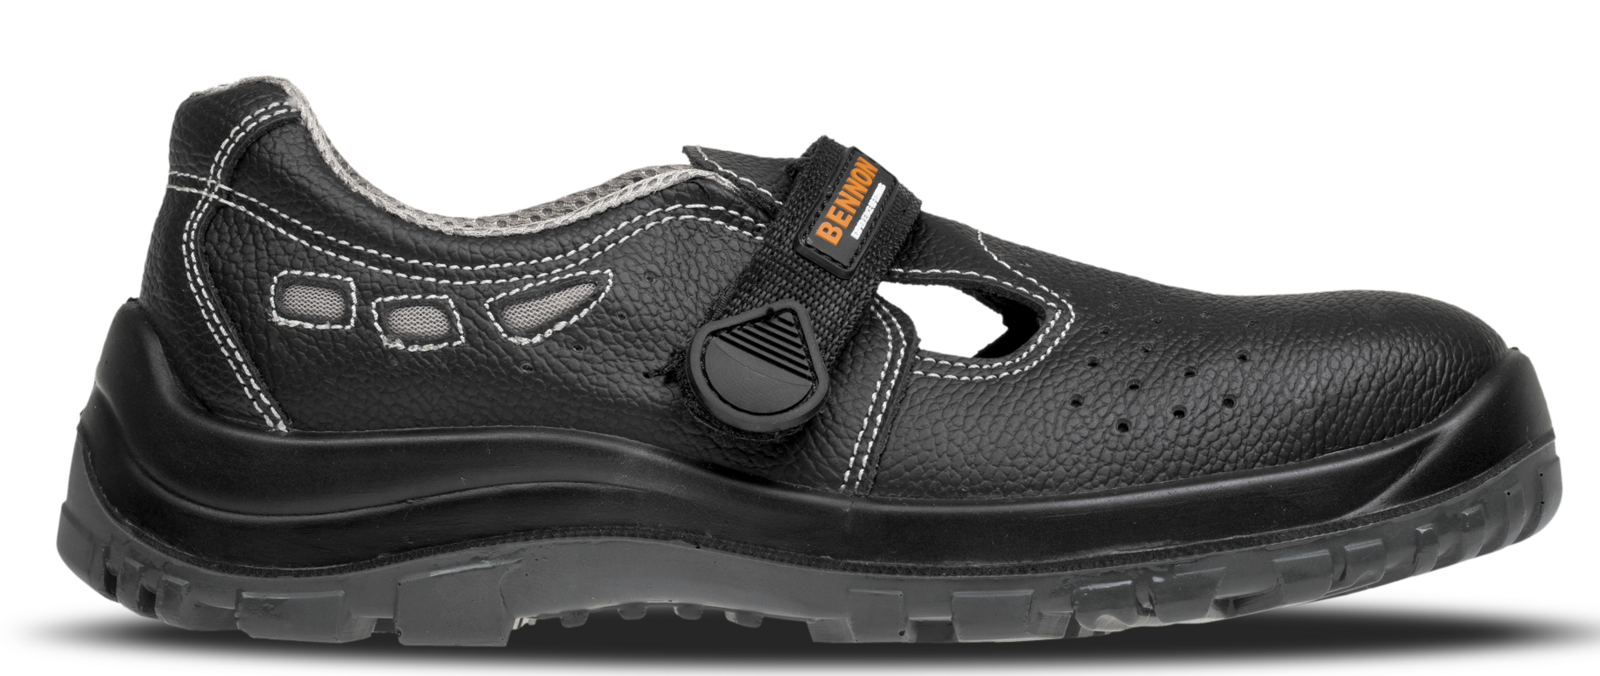 Bezpečnostné sandále Bennon Basic S1 - veľkosť: 40, farba: čierna